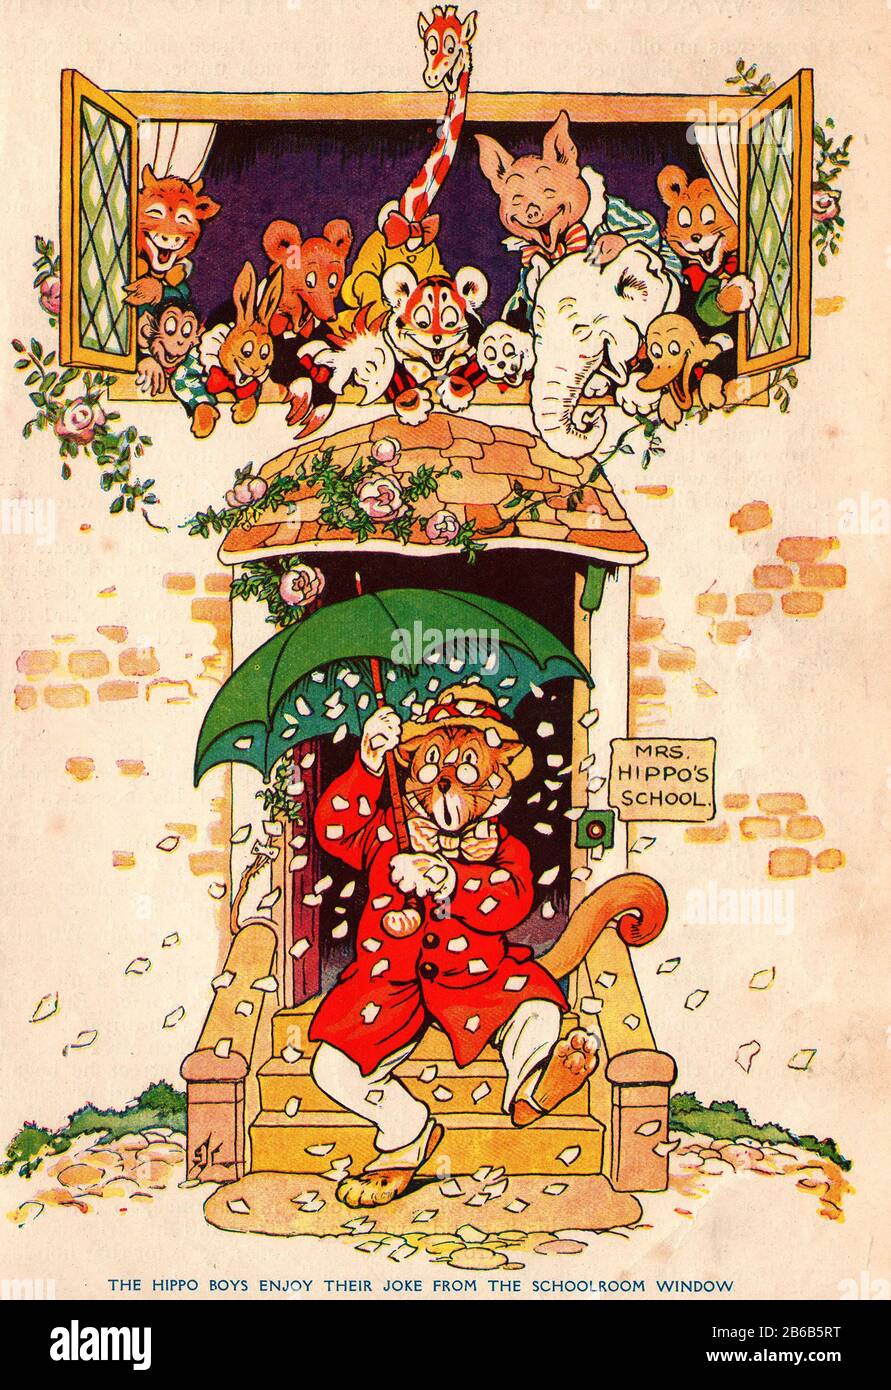 Illustrazione comica dei bambini di colore inglese degli anni '20 - il signor Puma lascia la scuola della signora Hippo mentre gli amici animali compreso il Tim della tigre, guardano sopra mentre è showered con la carta che hanno messo nel suo ombrello come un prank. Foto Stock